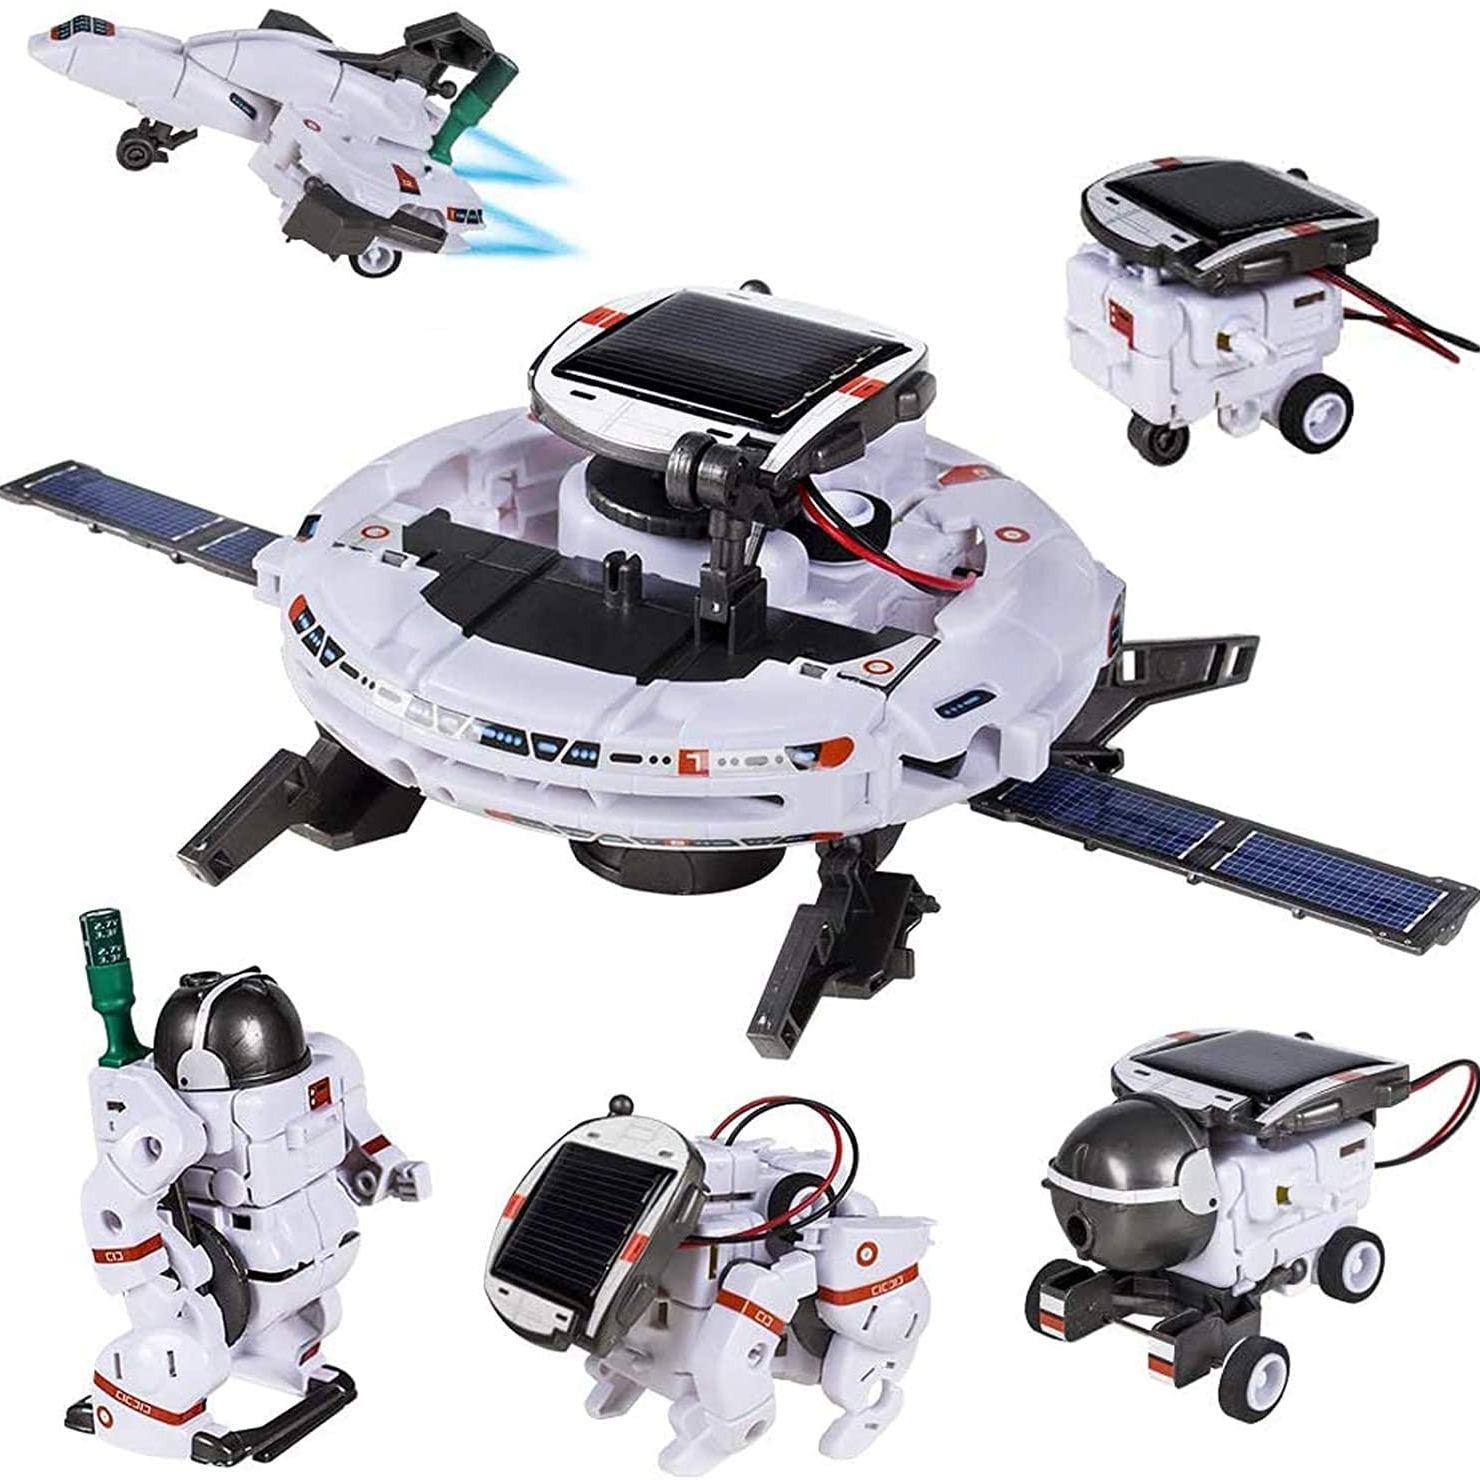  FUNTECH Robotica para niños 8 años o Mas, Construye tu Propio  Robot Solar, 11 Robot para Montar en 1, Taller de Robots y Kit Robotica,  Robot Juguete Educativo Stem, Regalos niños (231 Piezas)